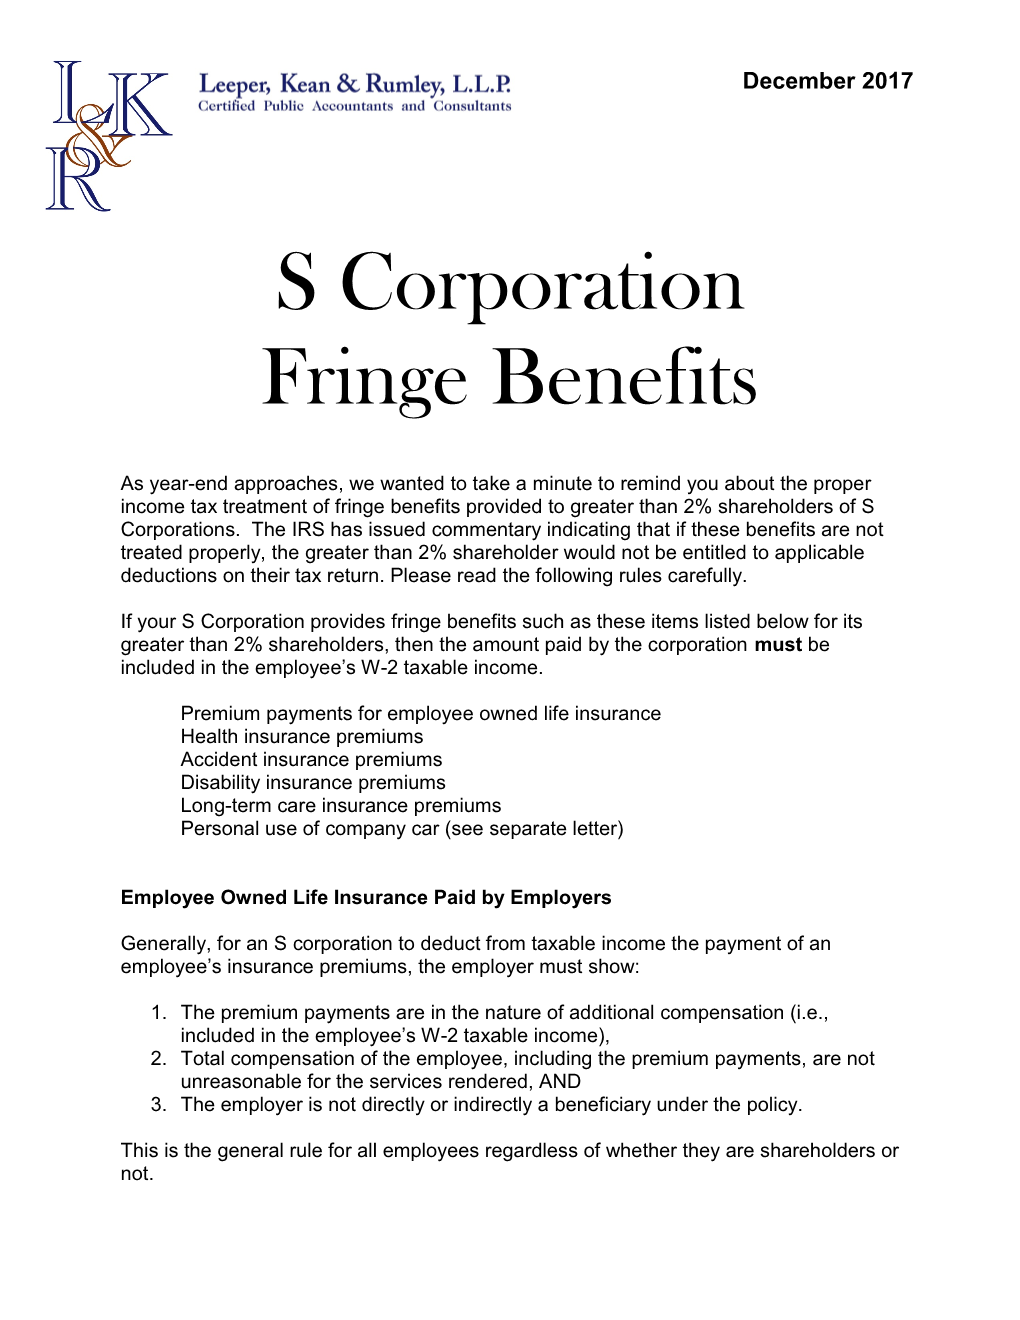 S Corporation Fringe Benefits